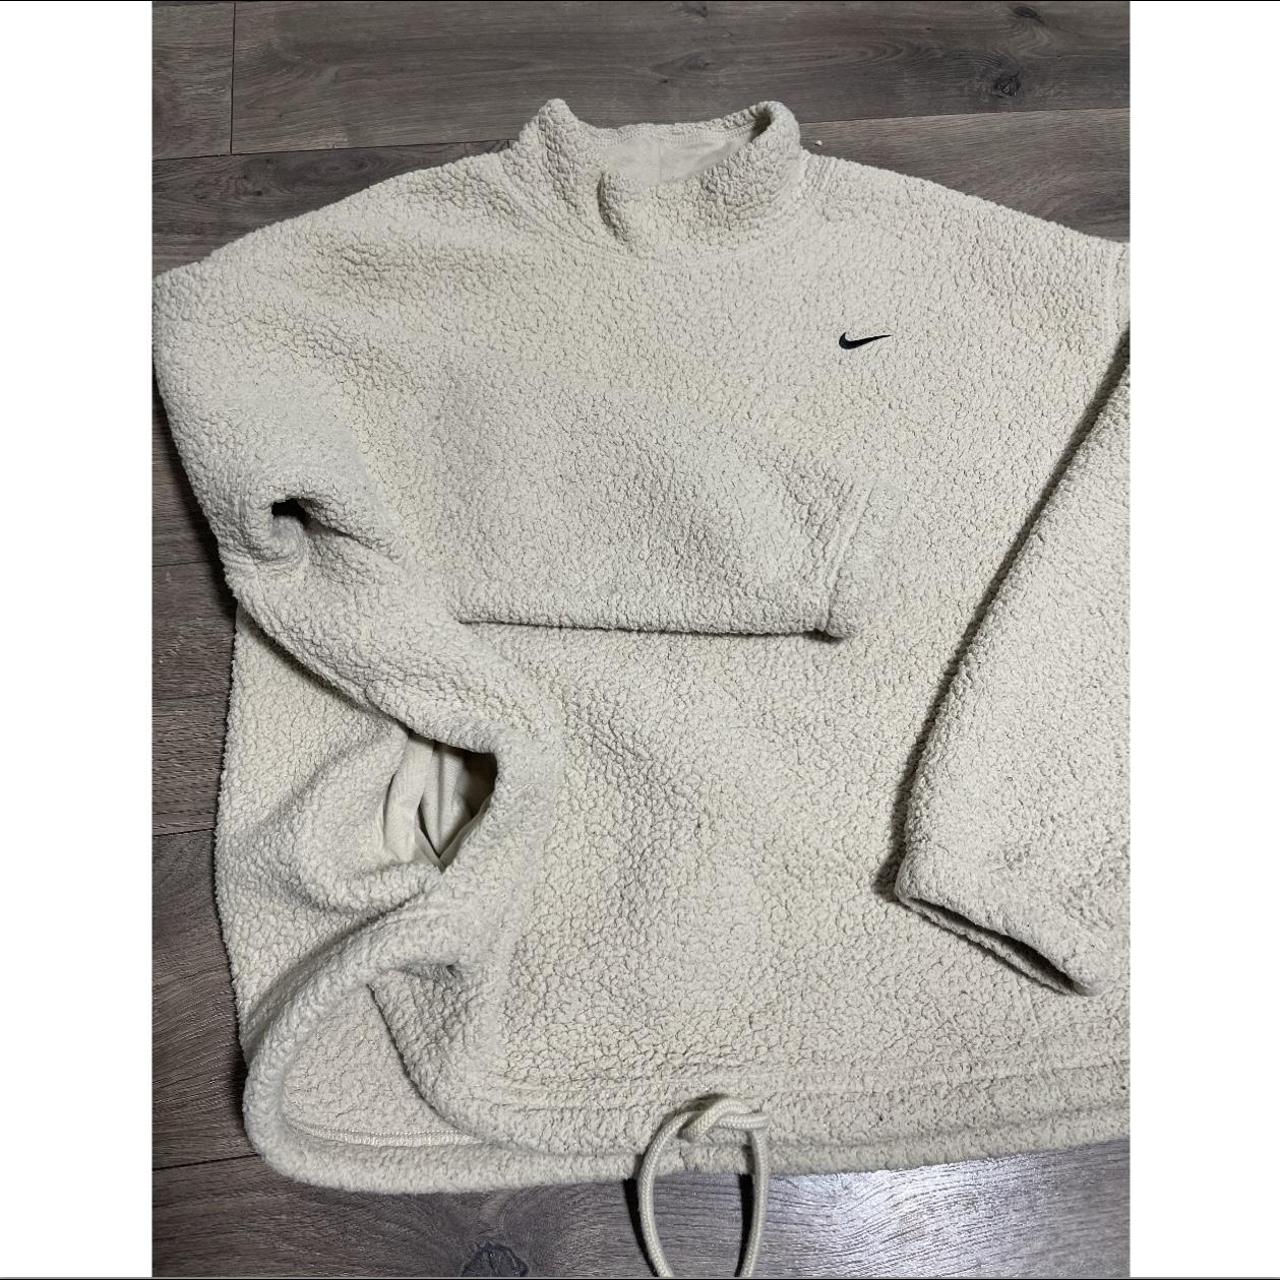 Nike Therma Fit Womens Fleece Training Sweater - Depop